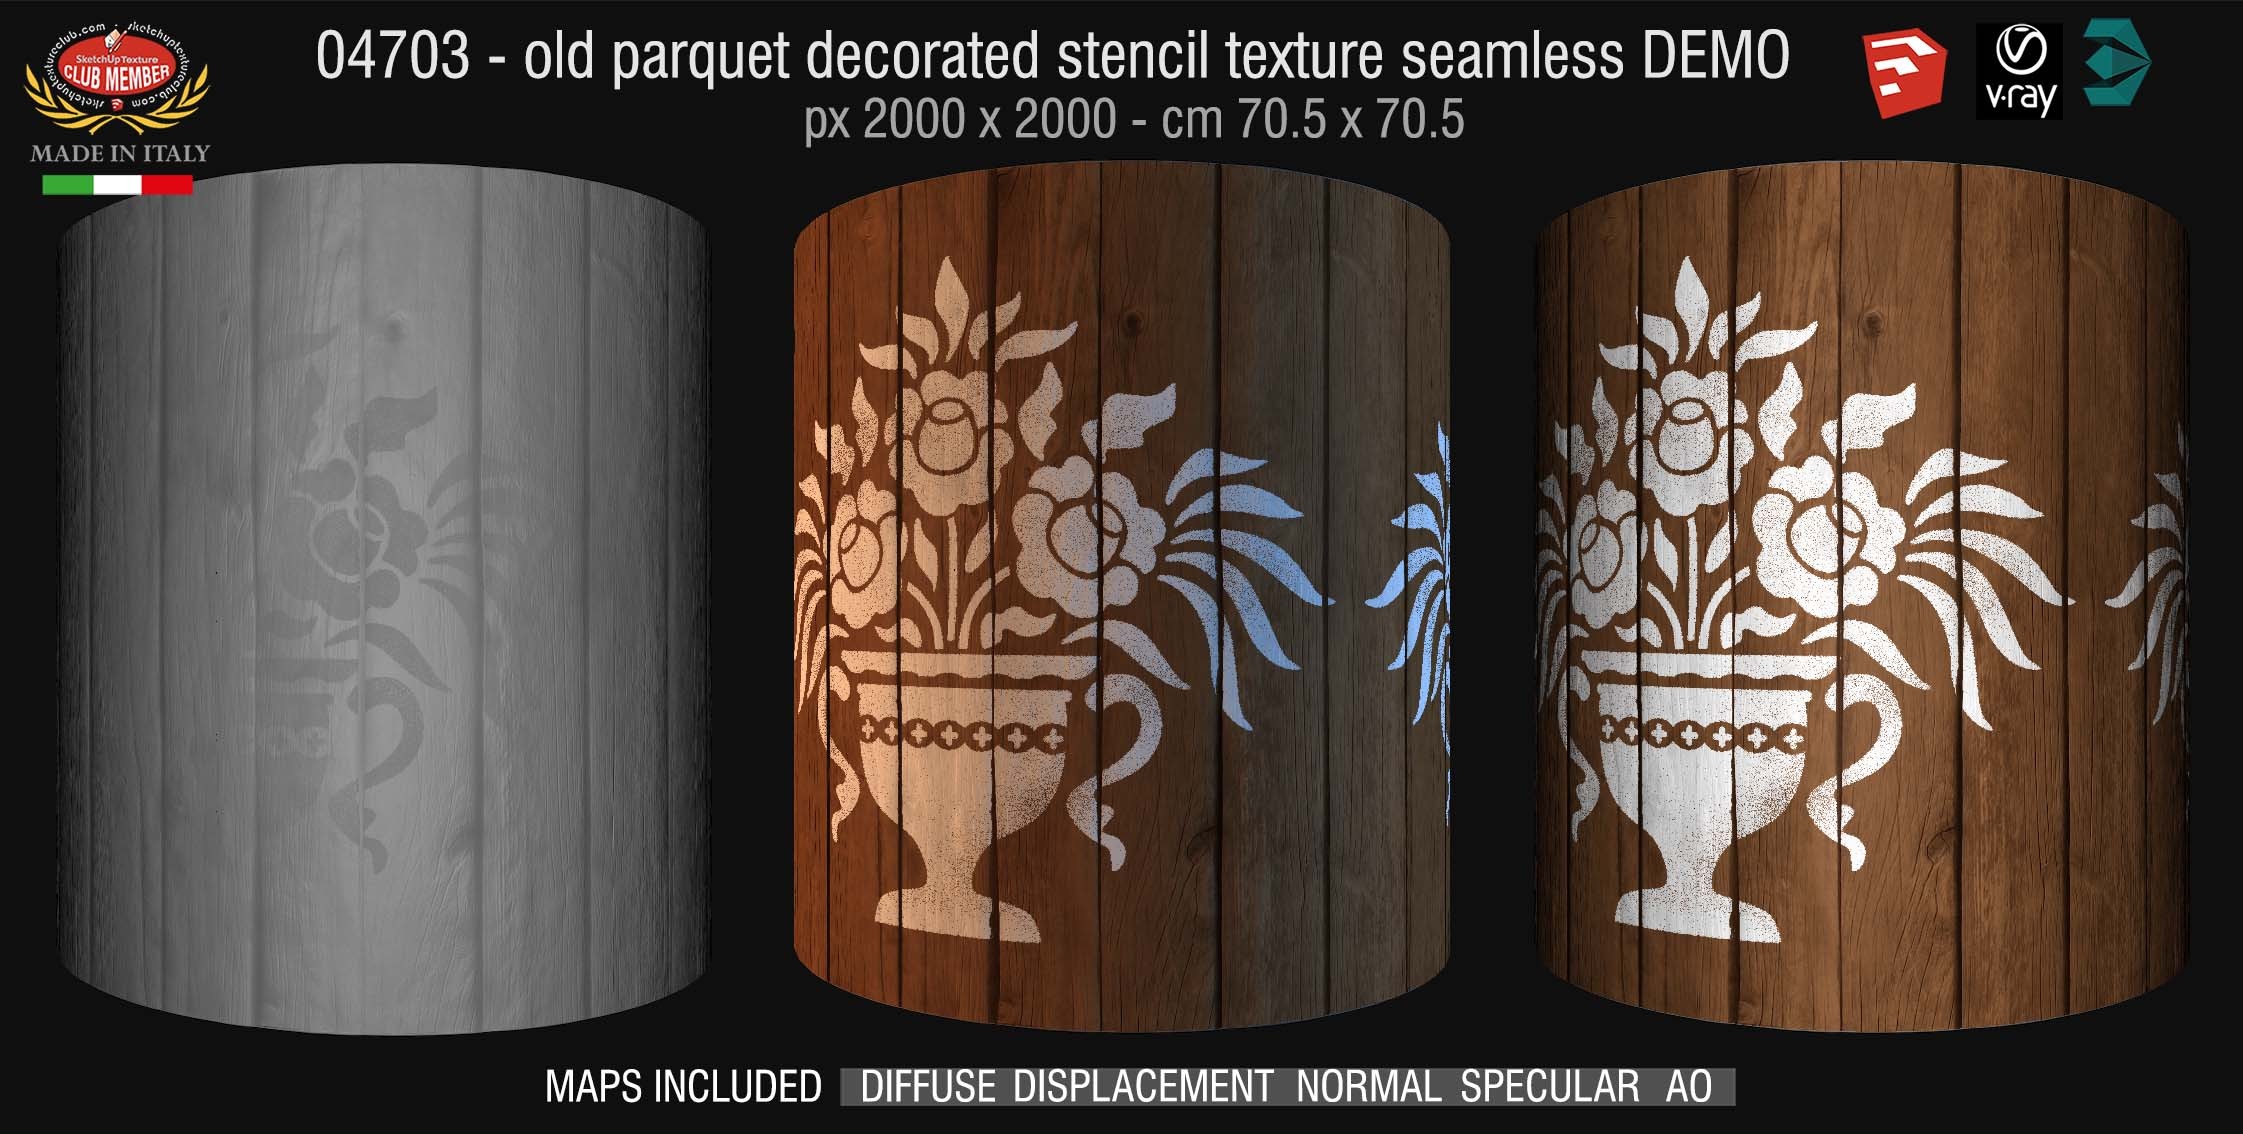 04703 HR Parquet decorated stencil texture seamless + maps DEMO